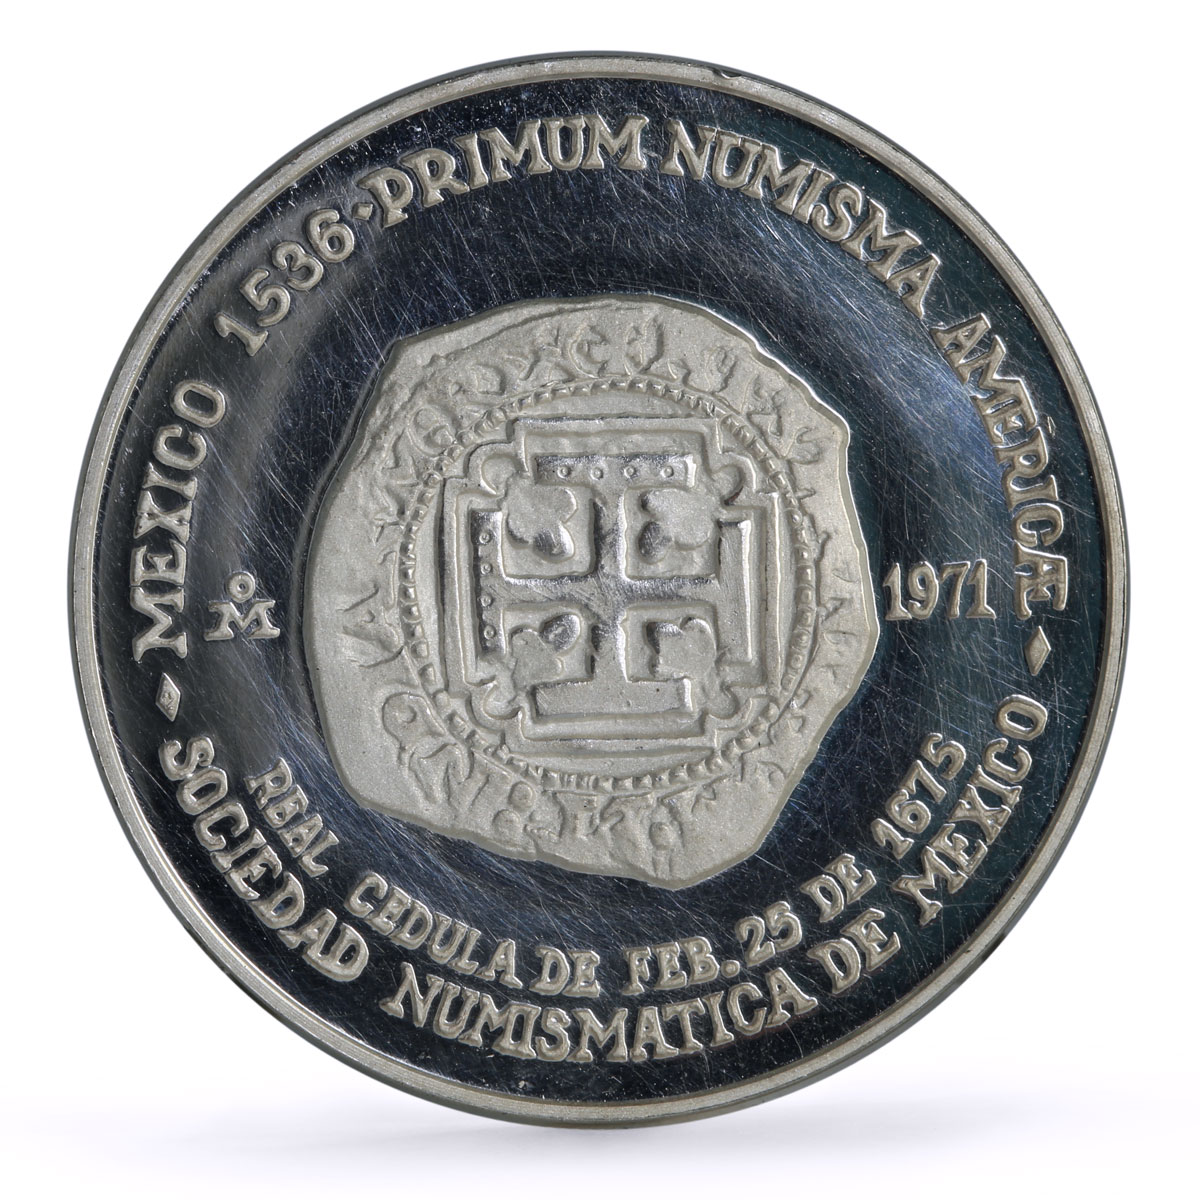 Mexico Numismatic Society Carlos II 8 Escudos silver token medal coin 1971